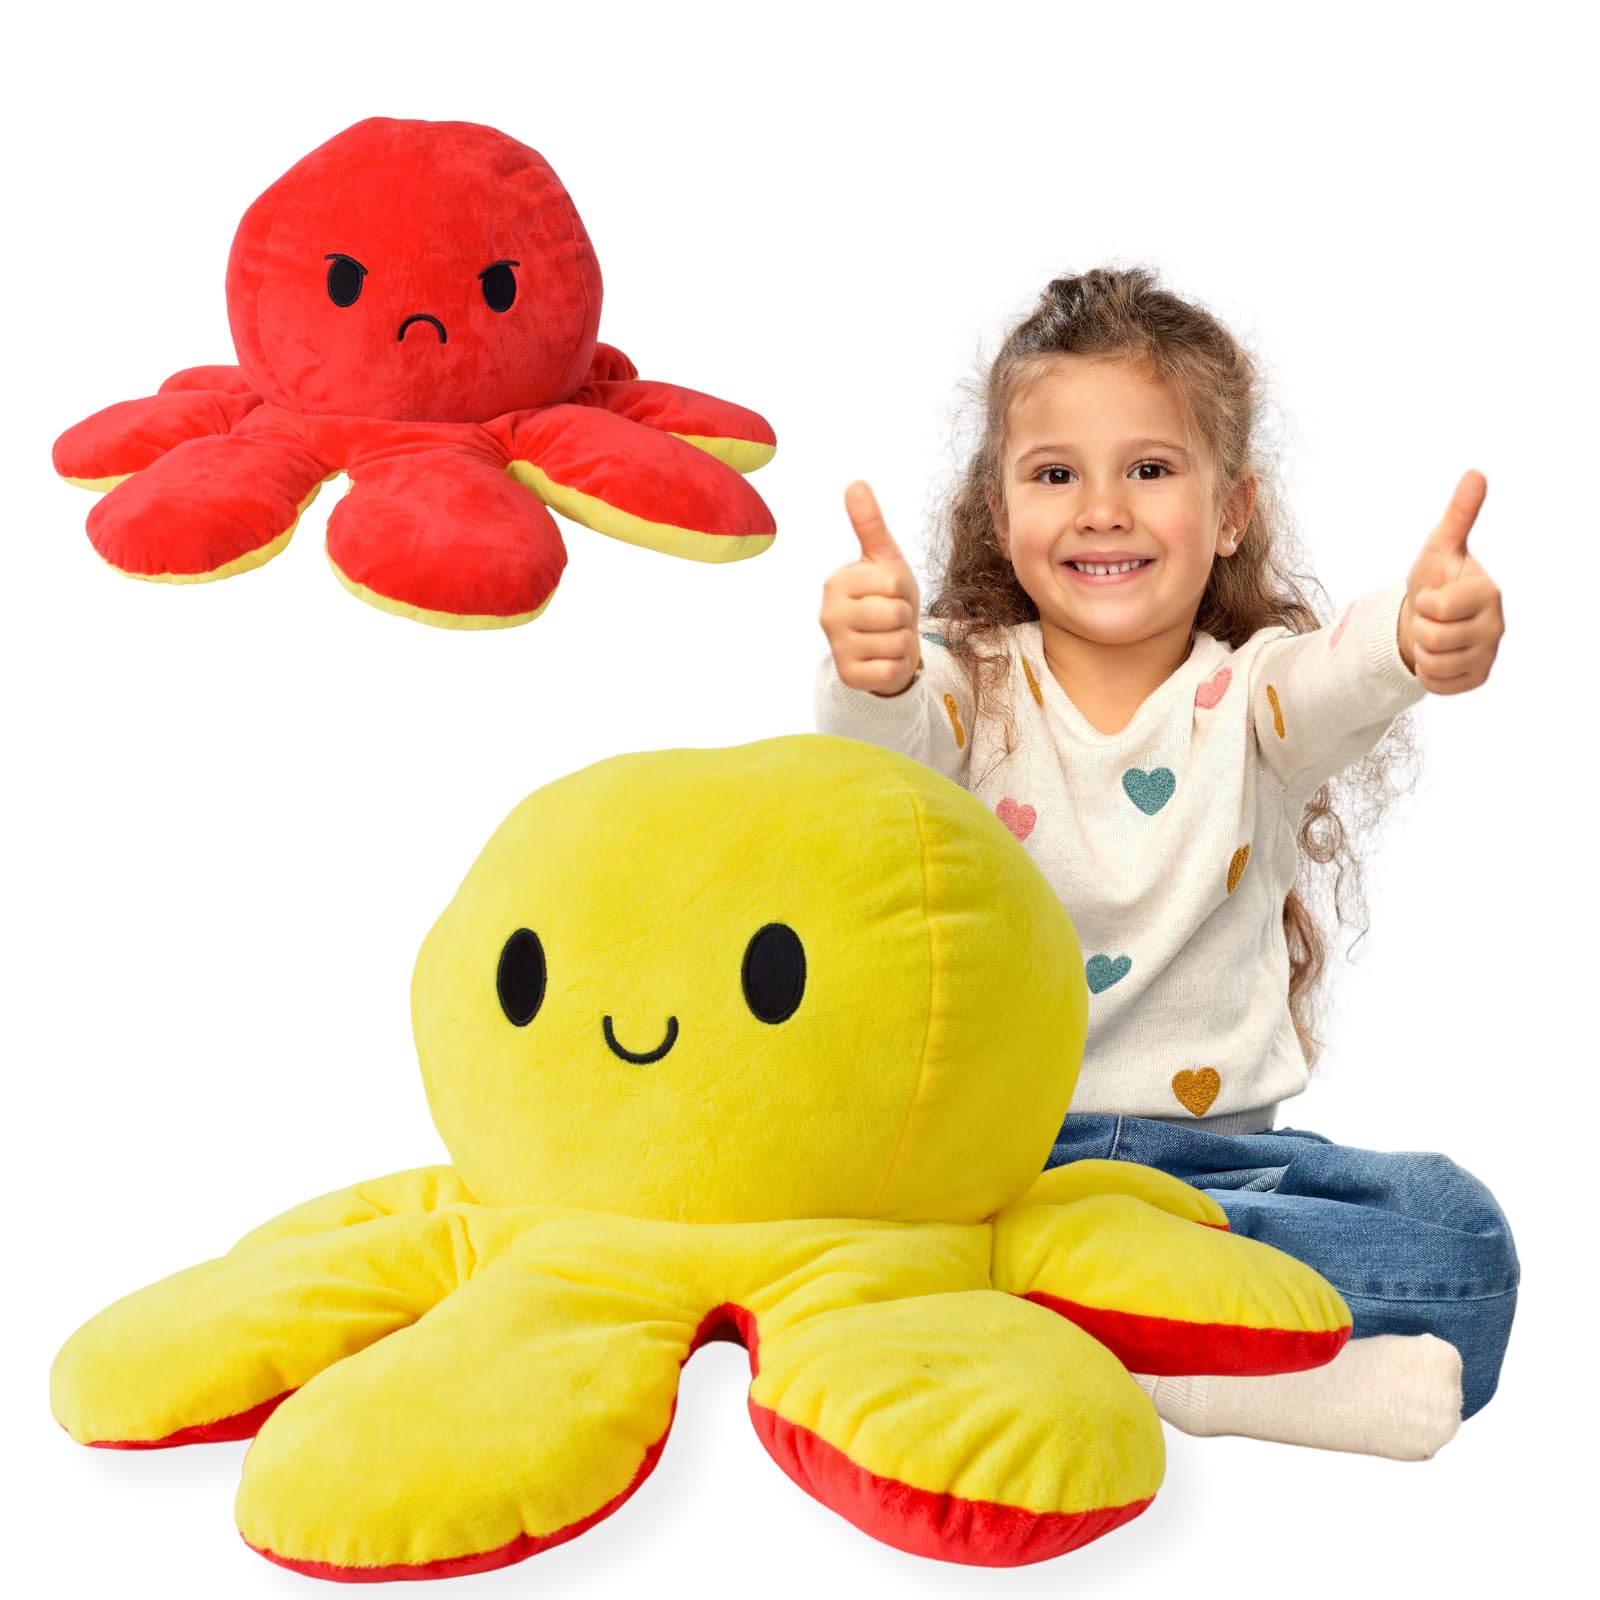 TE-Trend Kissen 80cm Wendekissen Wende Octopus Flip Plüschtier XXL Stimmungs Kuscheltier mit 2 Gesichtern Stofftier Geschenk Gelb Rot